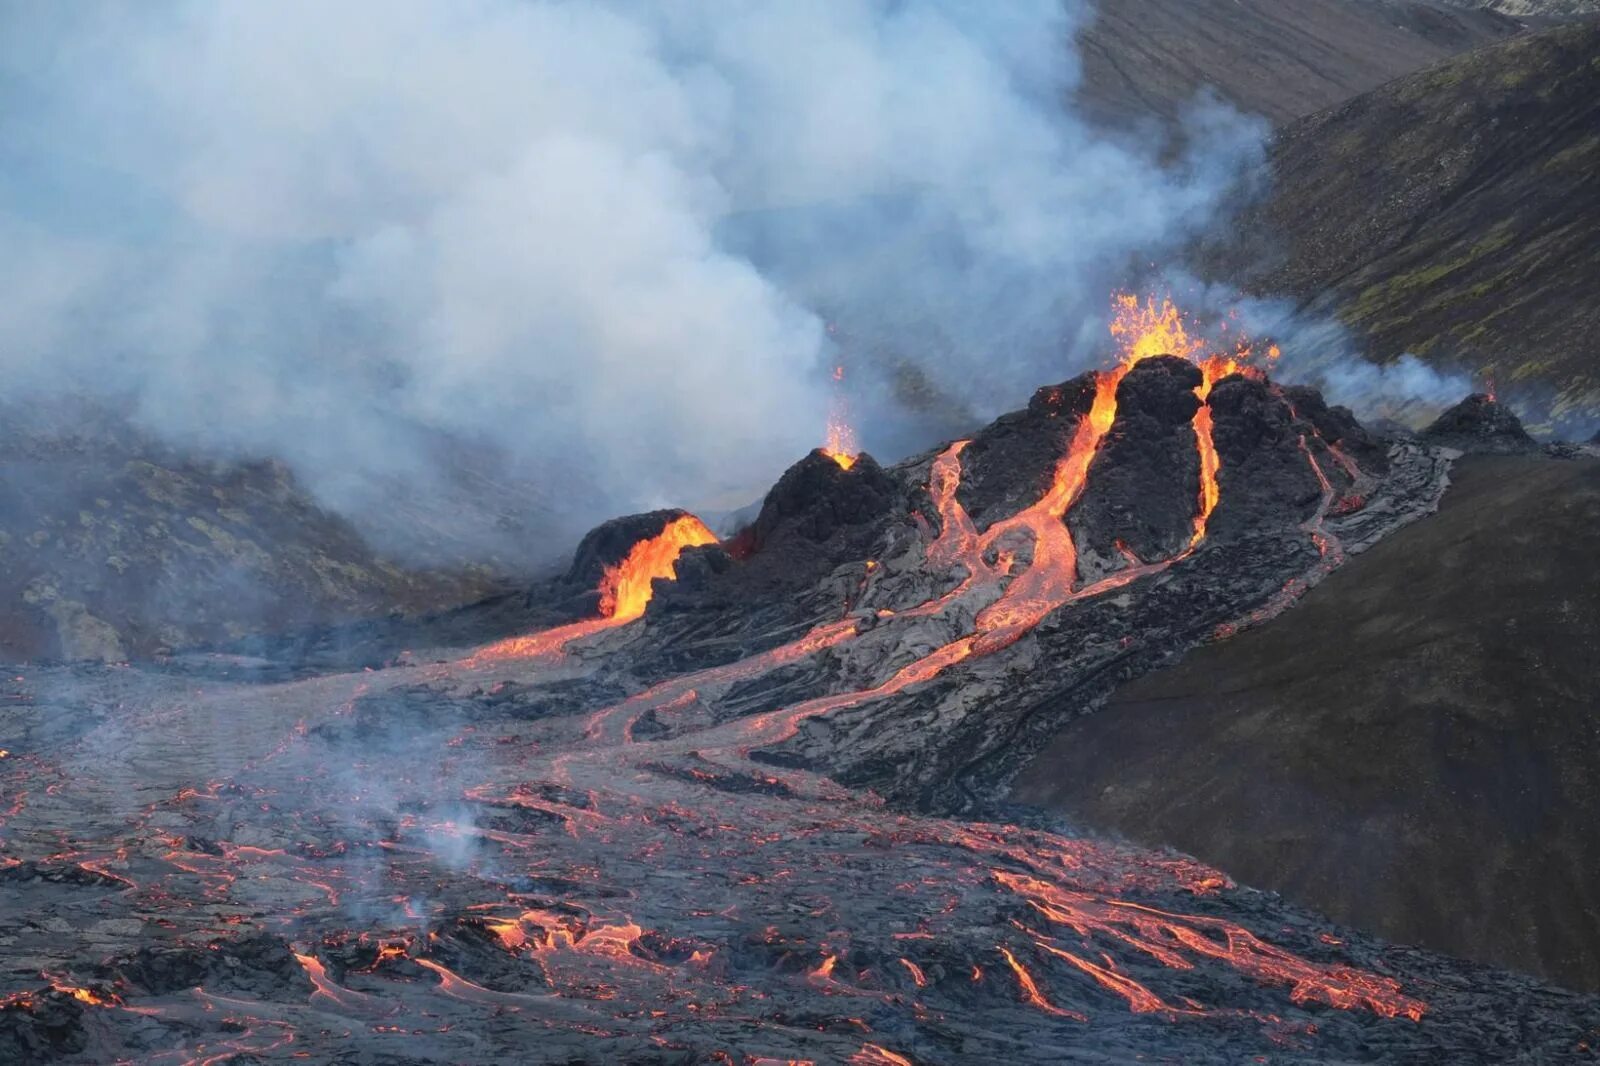 Извержение вулкана в Исландии 2021. Извержение вулкана в Исландии Эйяфьятлайокудль. Исландия вулкан Эйяфьятлайокудль извержение 2010. Эйяфьядлайёкюдль вулкан в Исландии. Сильные землетрясения извержения вулканов мощные гейзеры